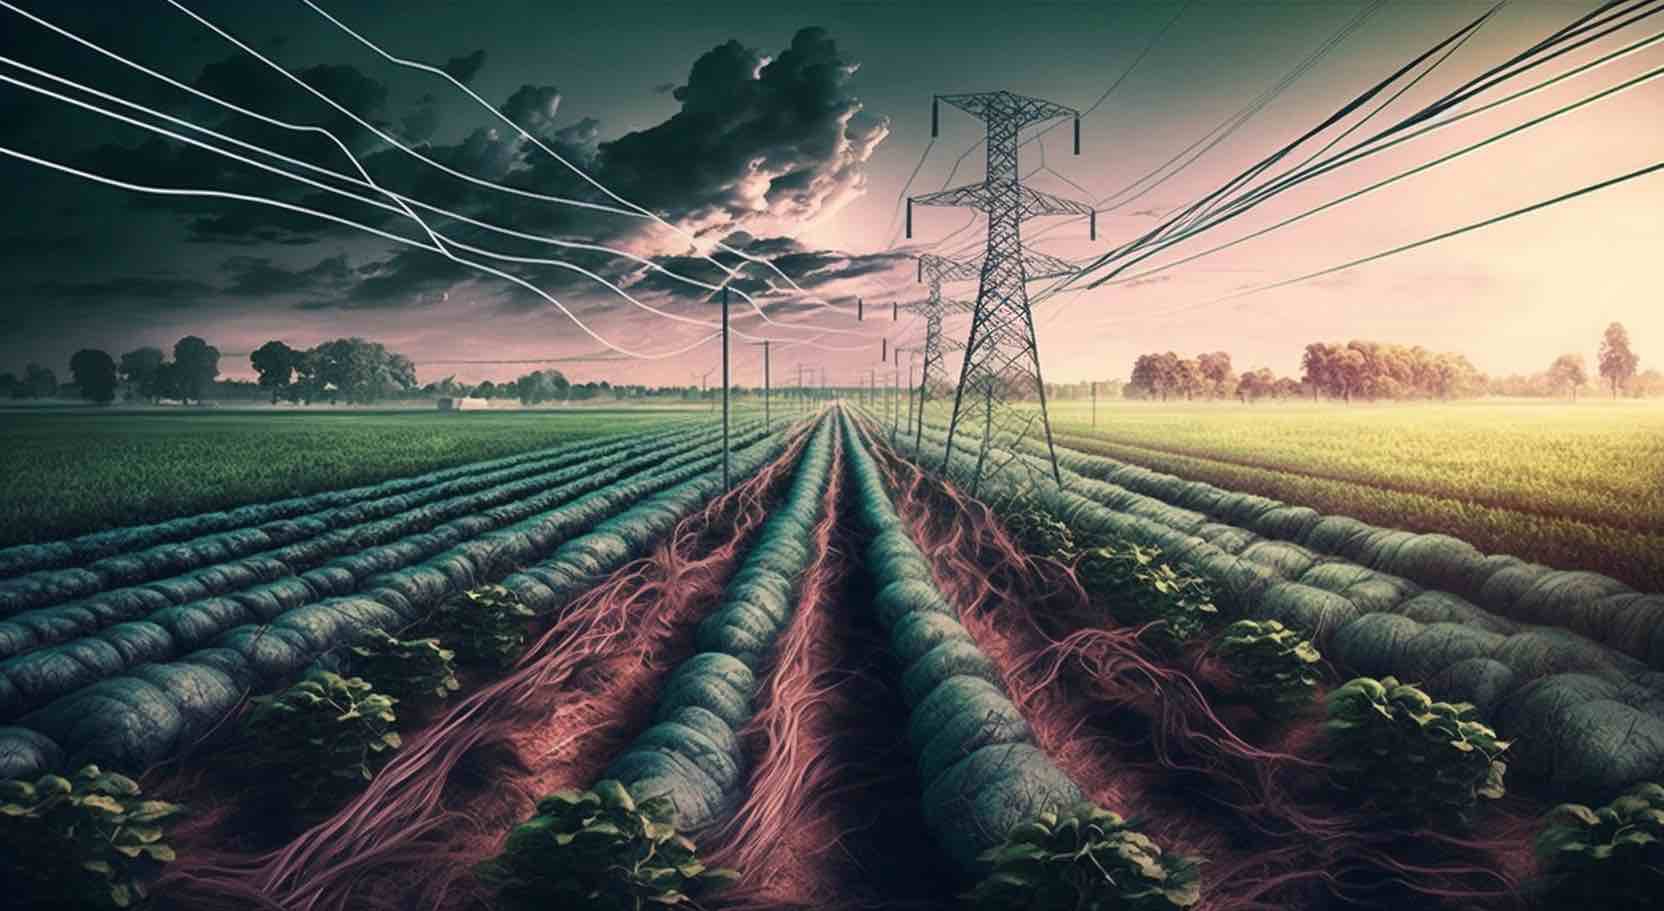 Elektro Kültür Tarımı: Artan Verim ve Sürdürülebilirlik için Devrimci Bir Yöntem mi?